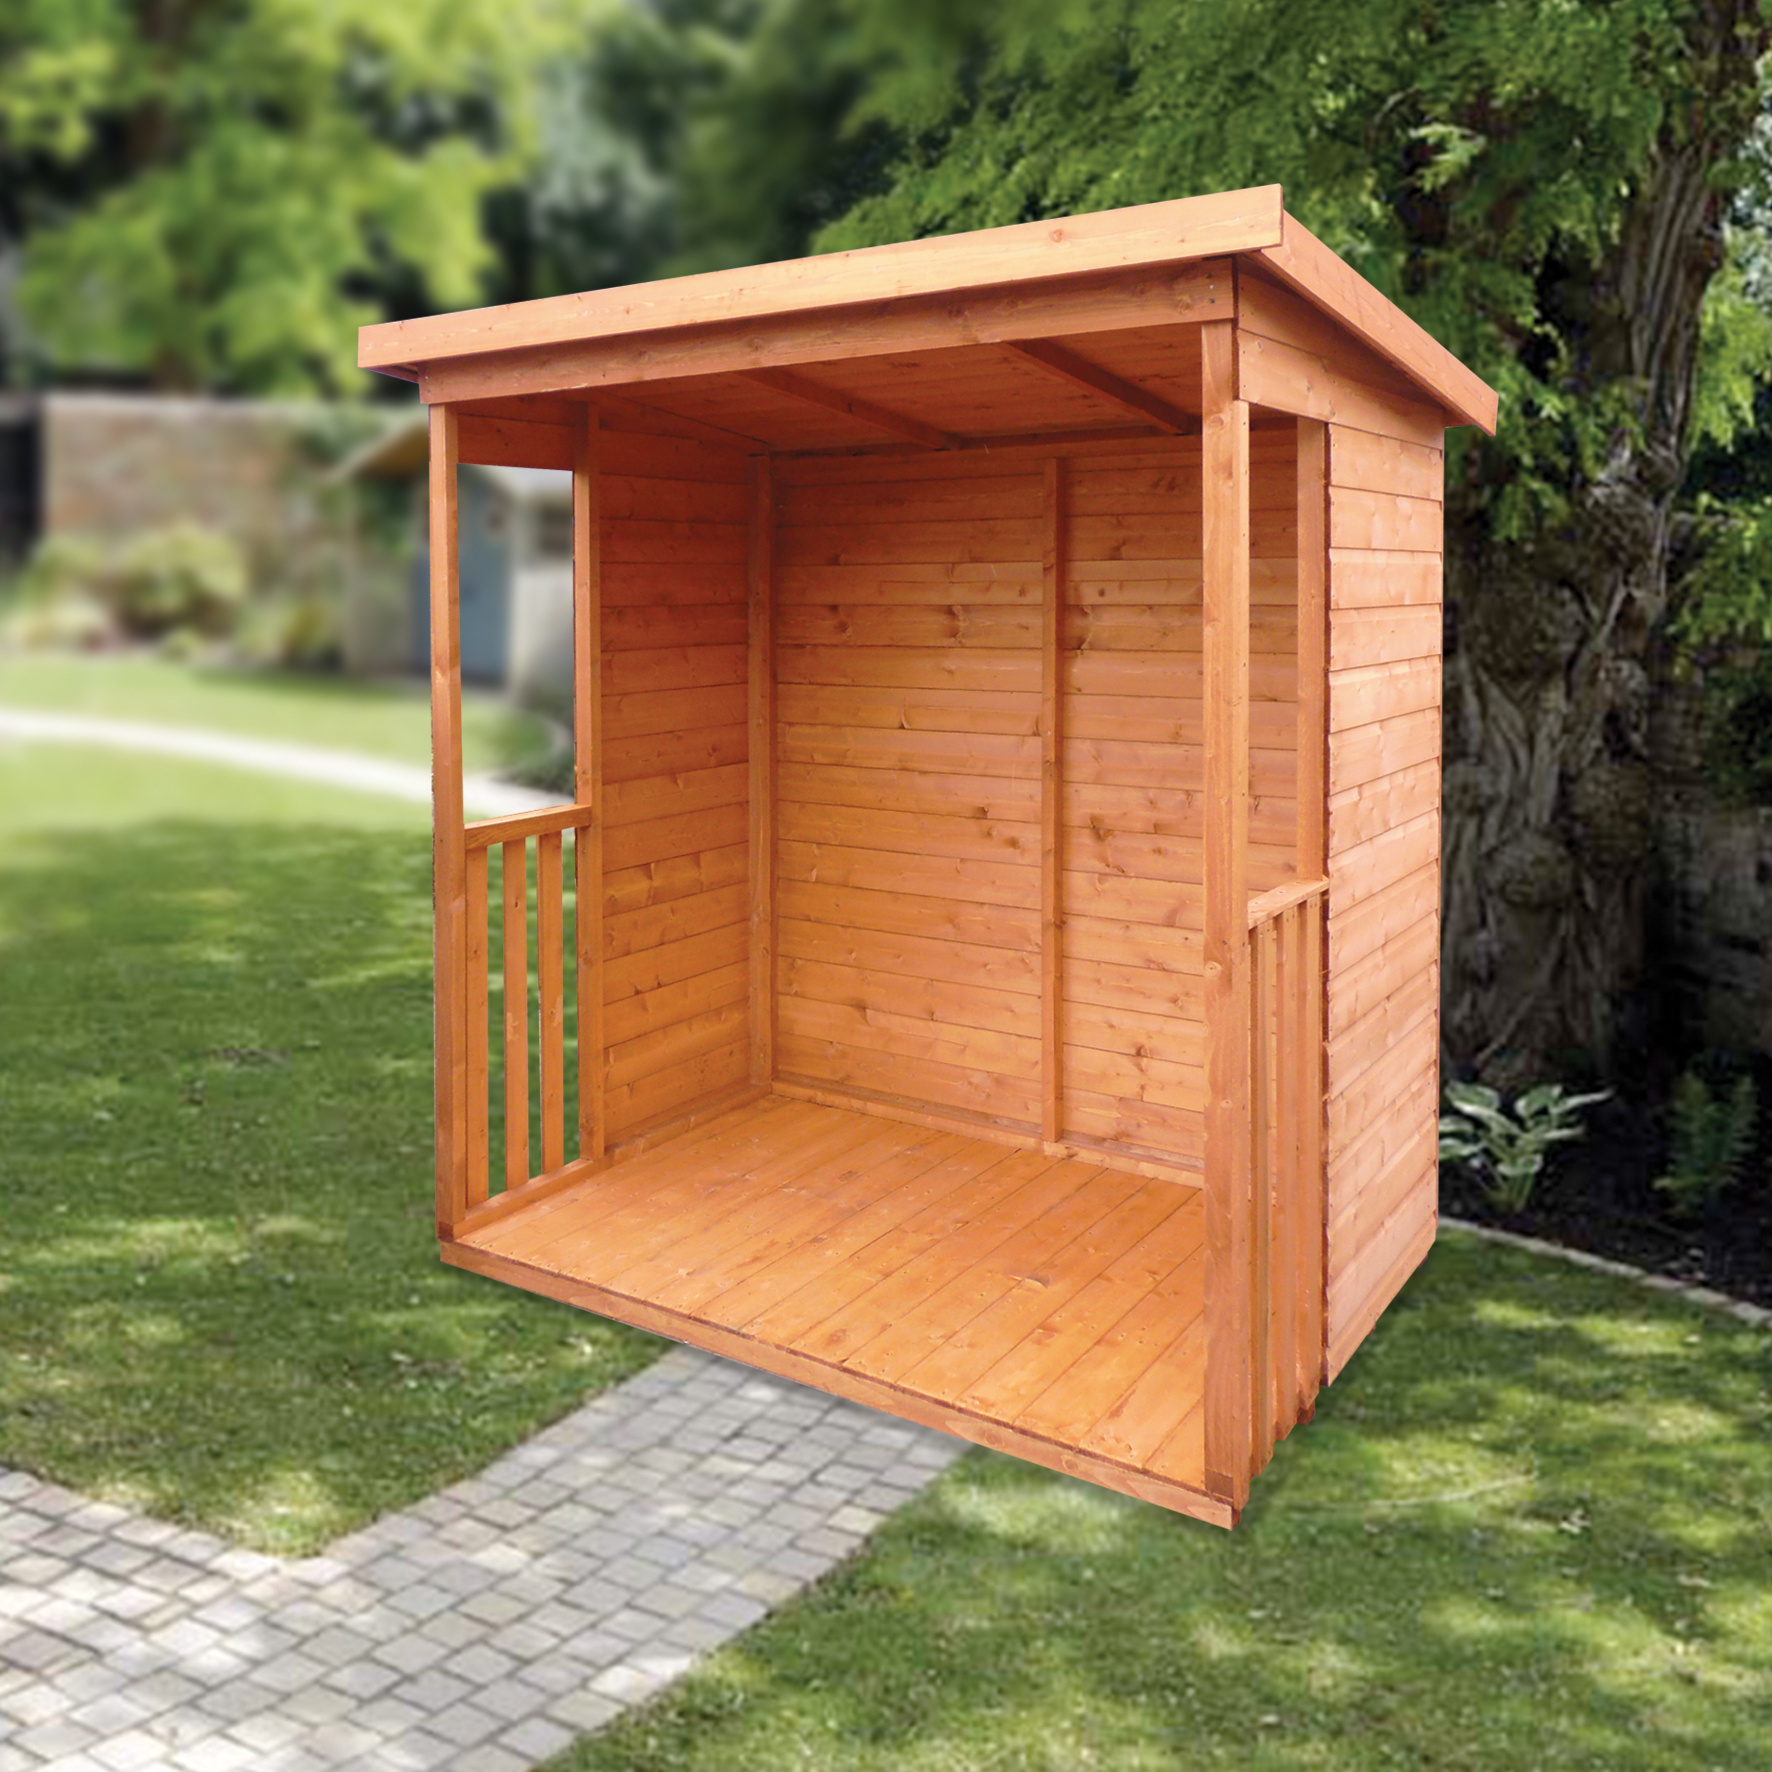 6x4 wooden garden shed base full kit handmade on onbuy